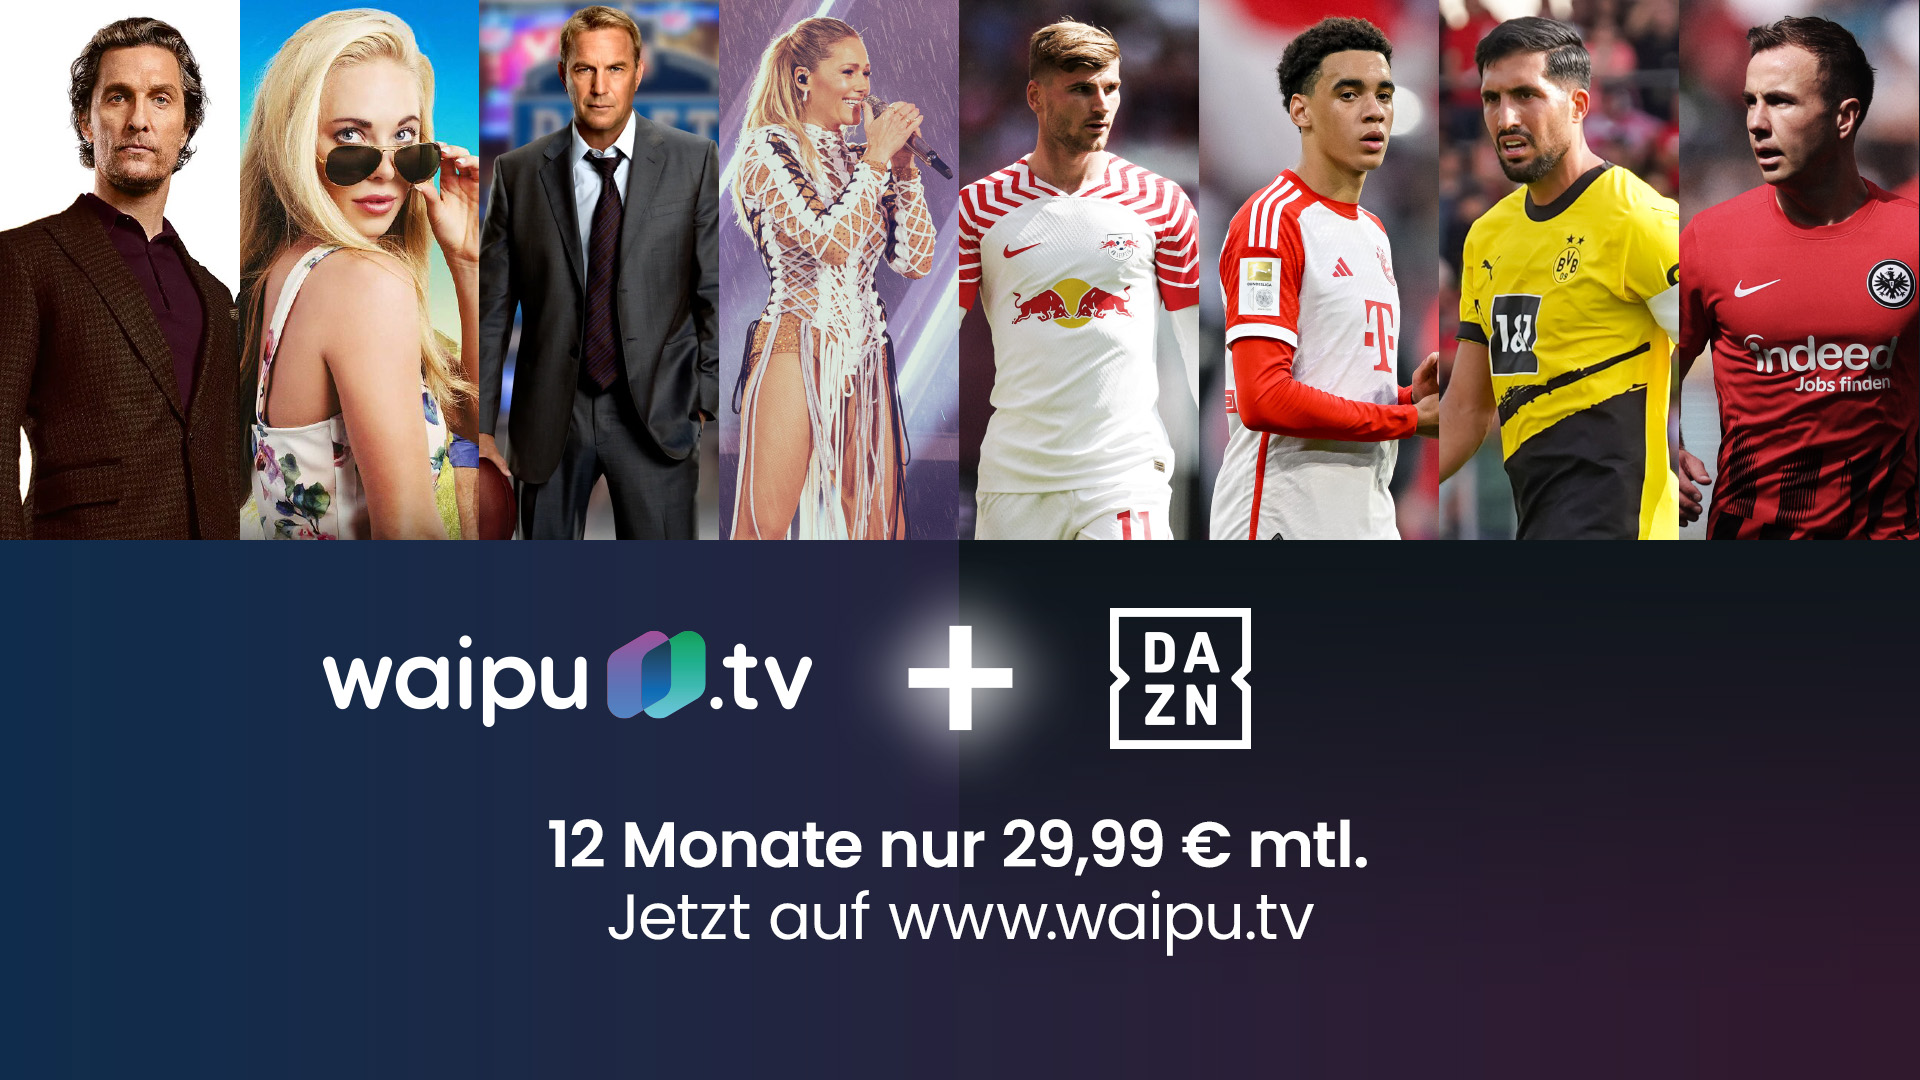 waipu.tv launcht 25 DAZN Prozent Rabatt UNLIMITED-Angebot mit neues